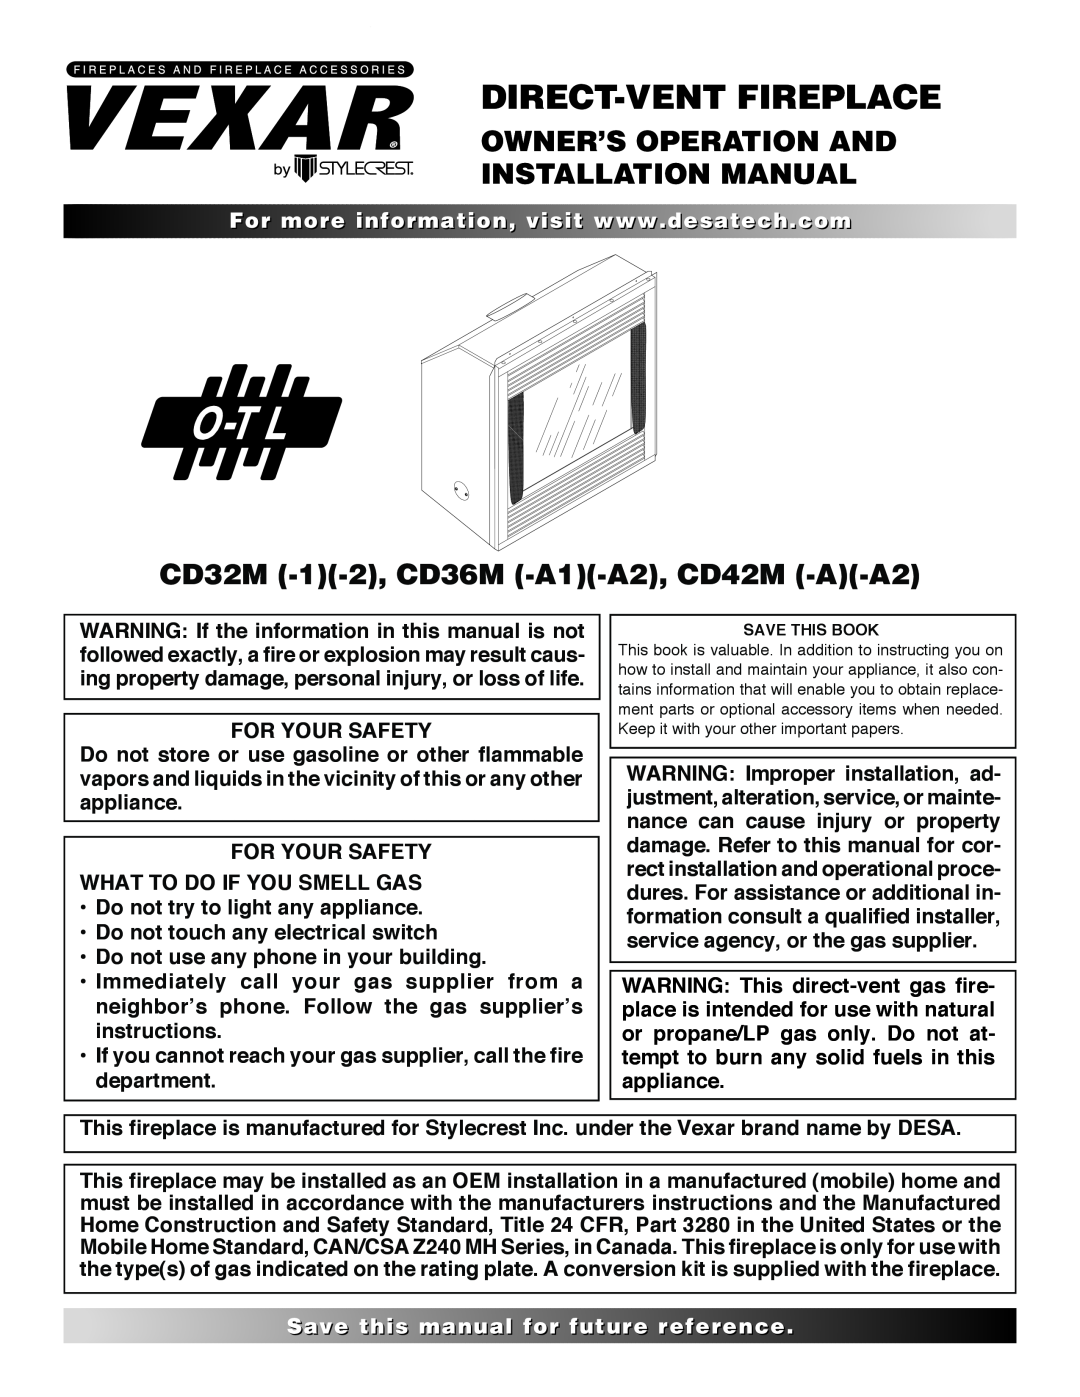 Desa CD36M, CD32M, CD42M installation manual Owner’S Operation And Installation Manual, Forvisit..com, thisfor 